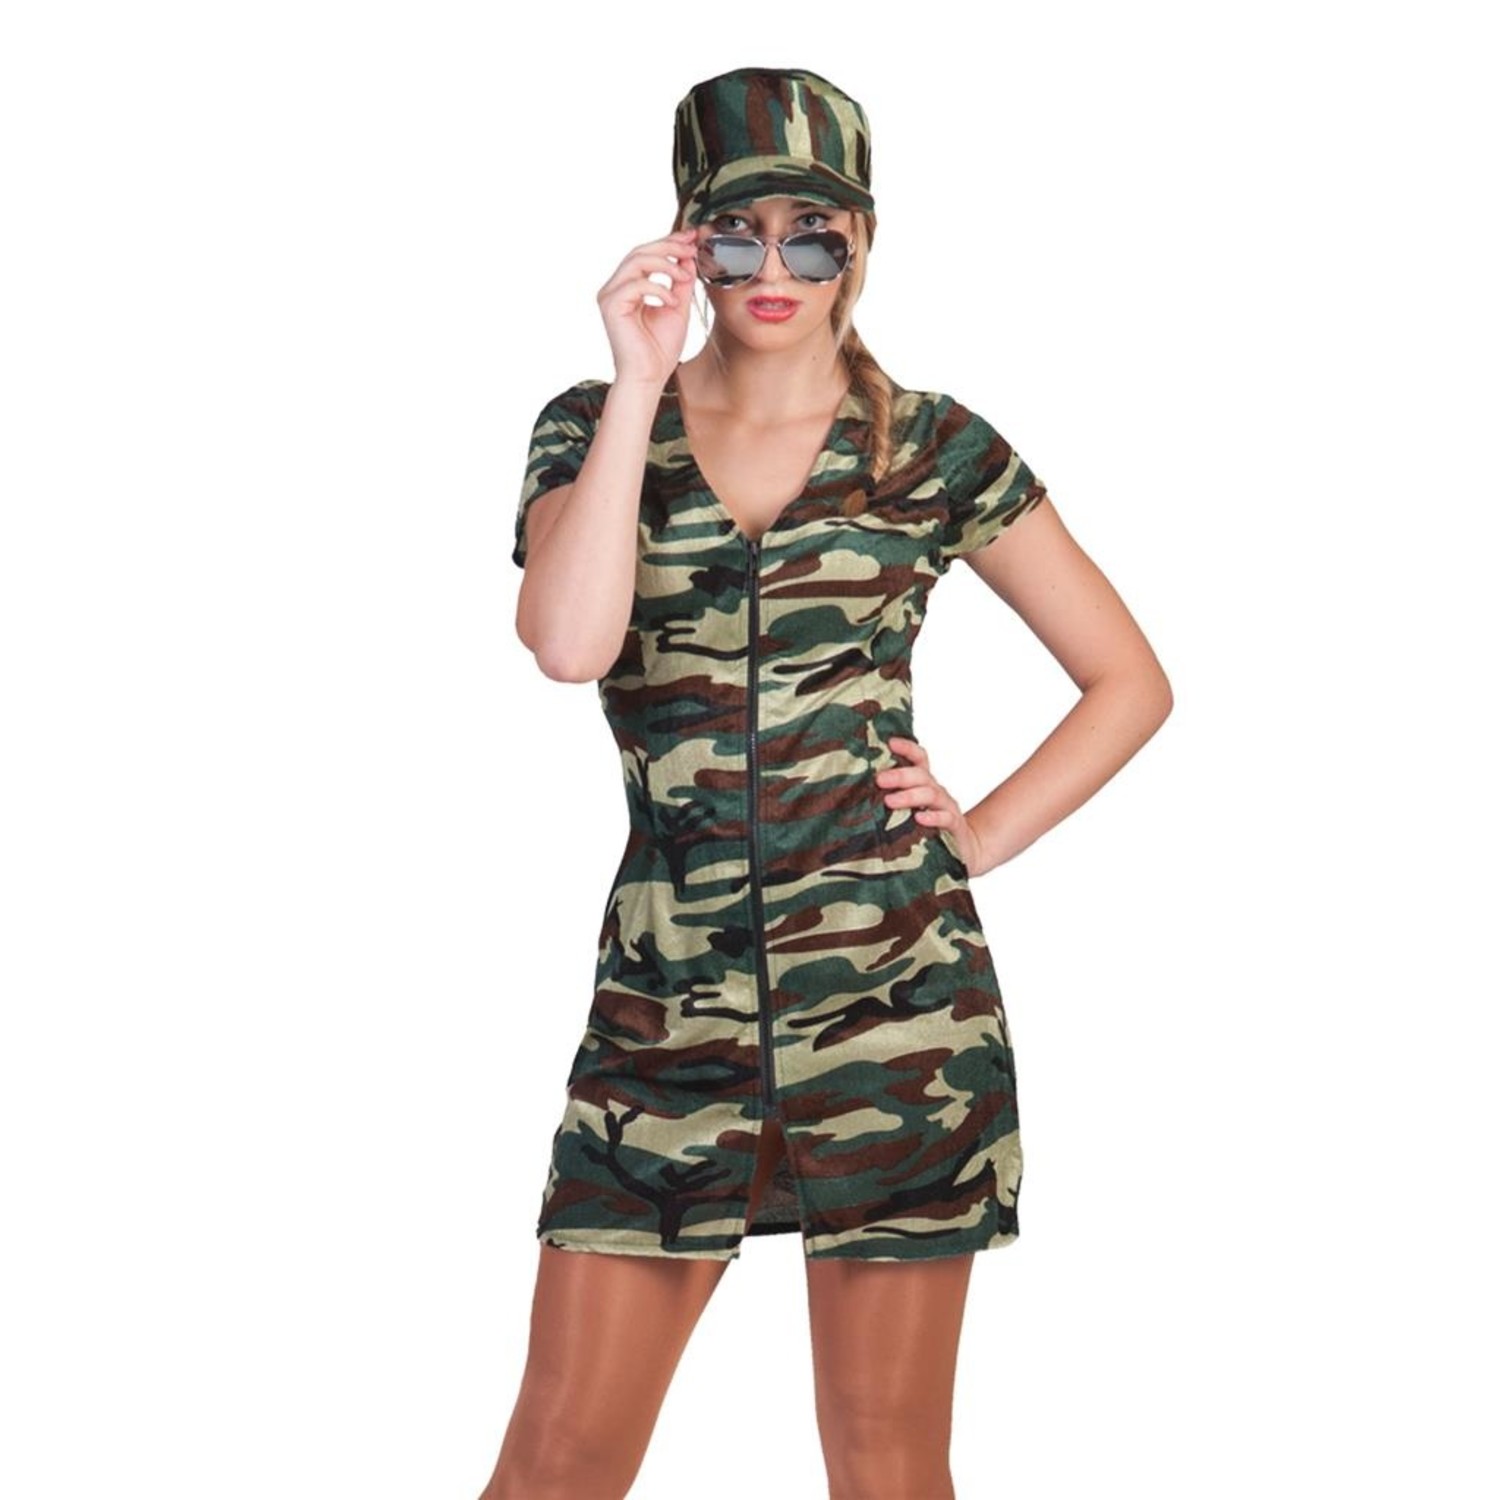 Sexy soldaten jurkje voor carnaval - e-Carnavalskleding